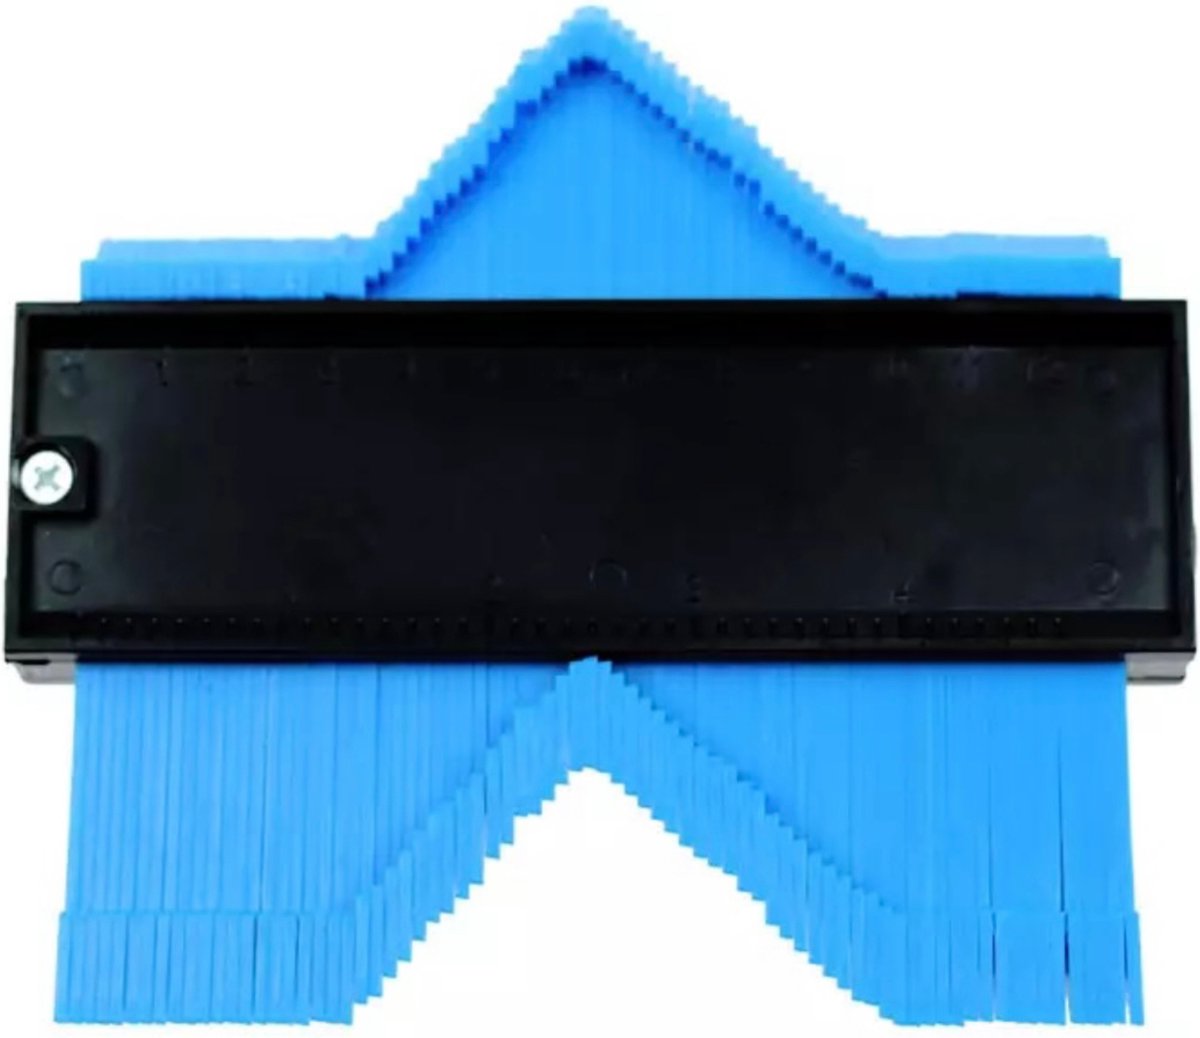 Aftekenhulp Set - Blauw - 12,7 cm - Meethulp - profielaftaster - Contourmal - aftekenhulp laminaat - Geschikt voor DIY, Tapijt, Laminaat Legset en Tegelsticker - Merkloos